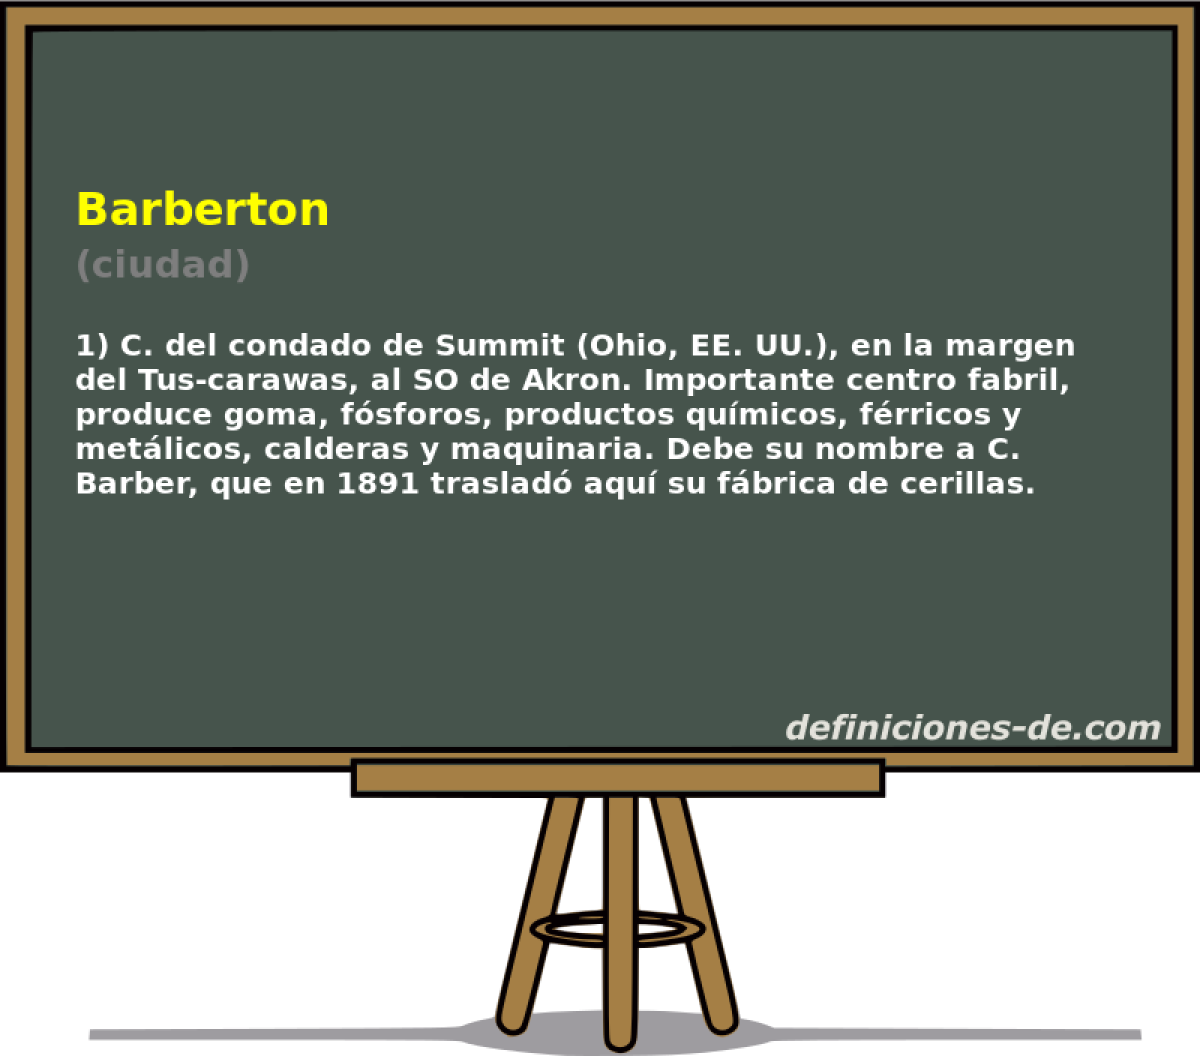 Barberton (ciudad)